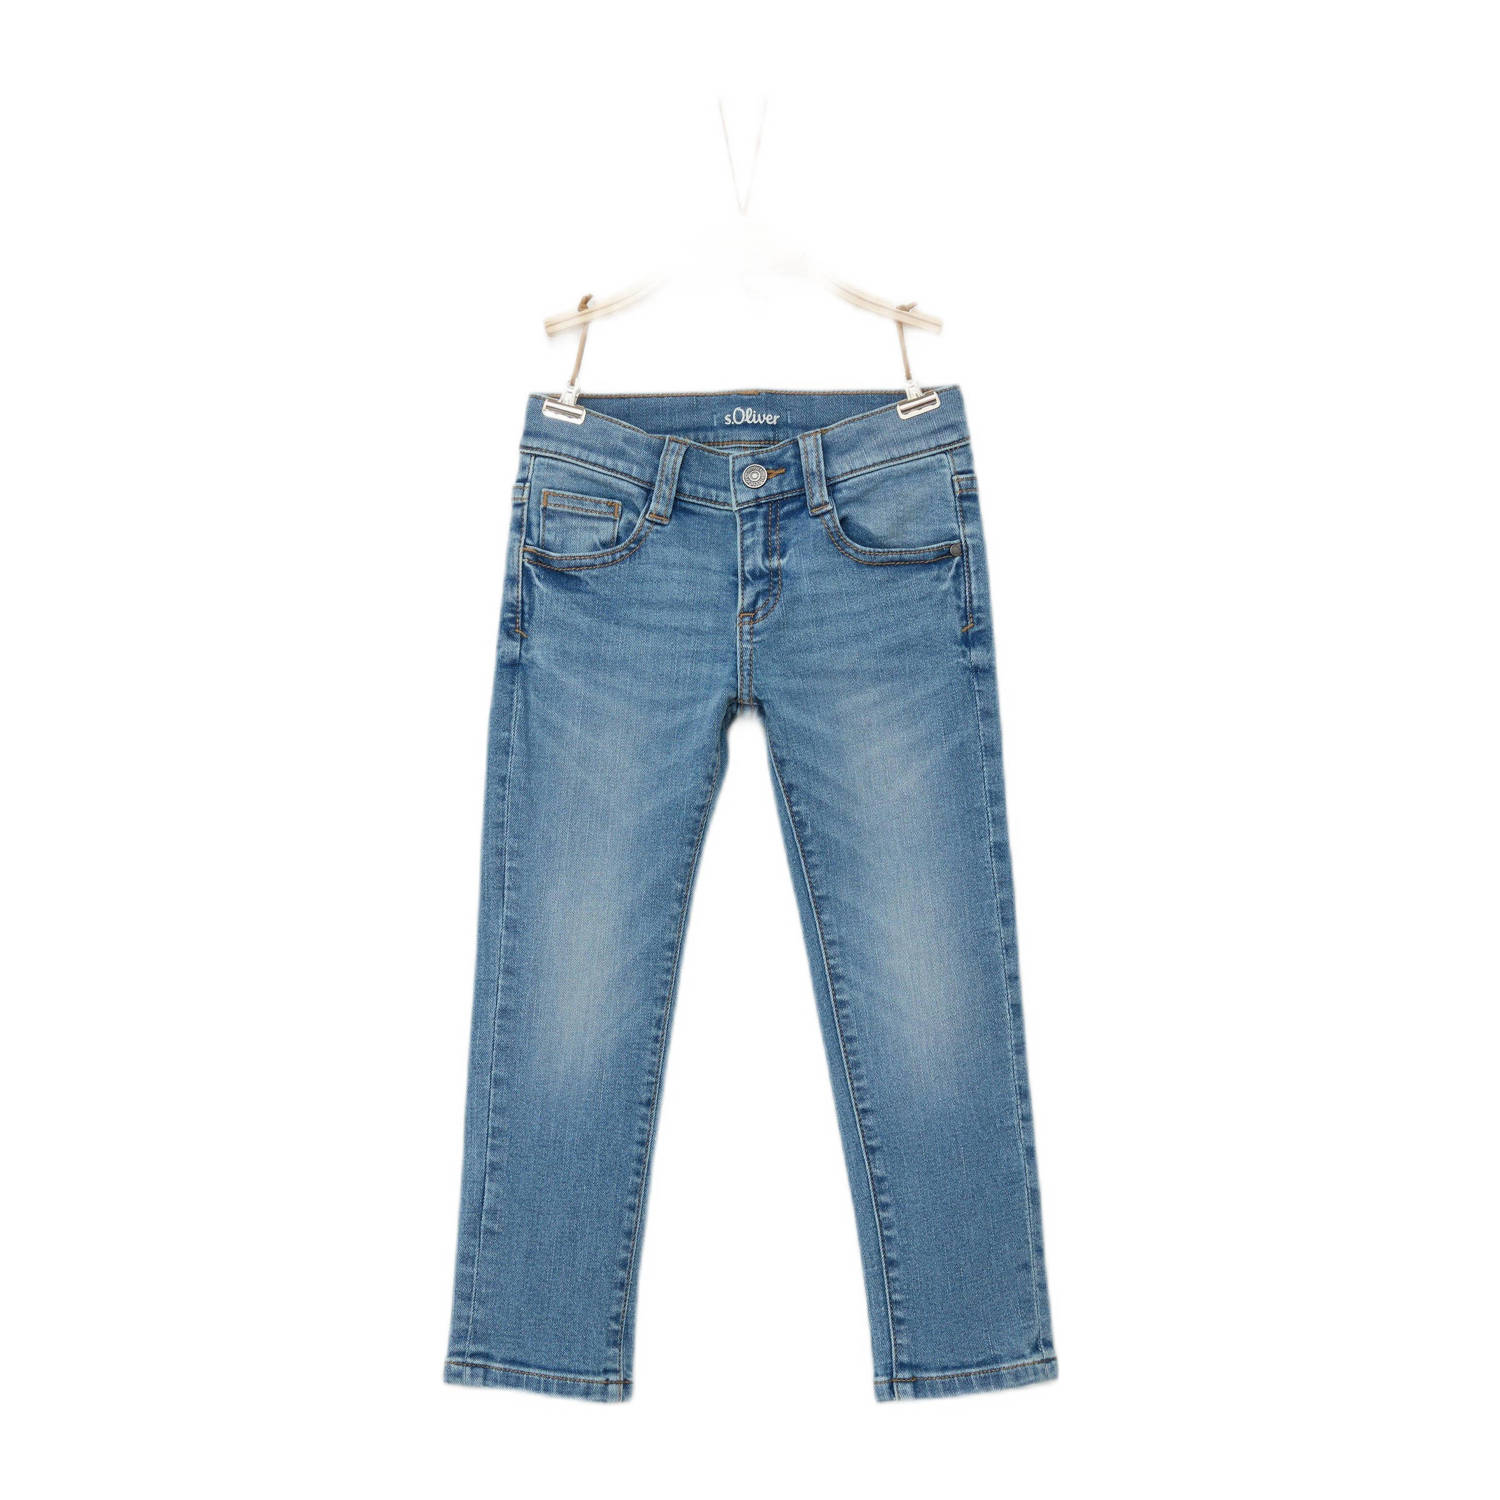 S.Oliver regular fit jeans light blue denim Blauw 104